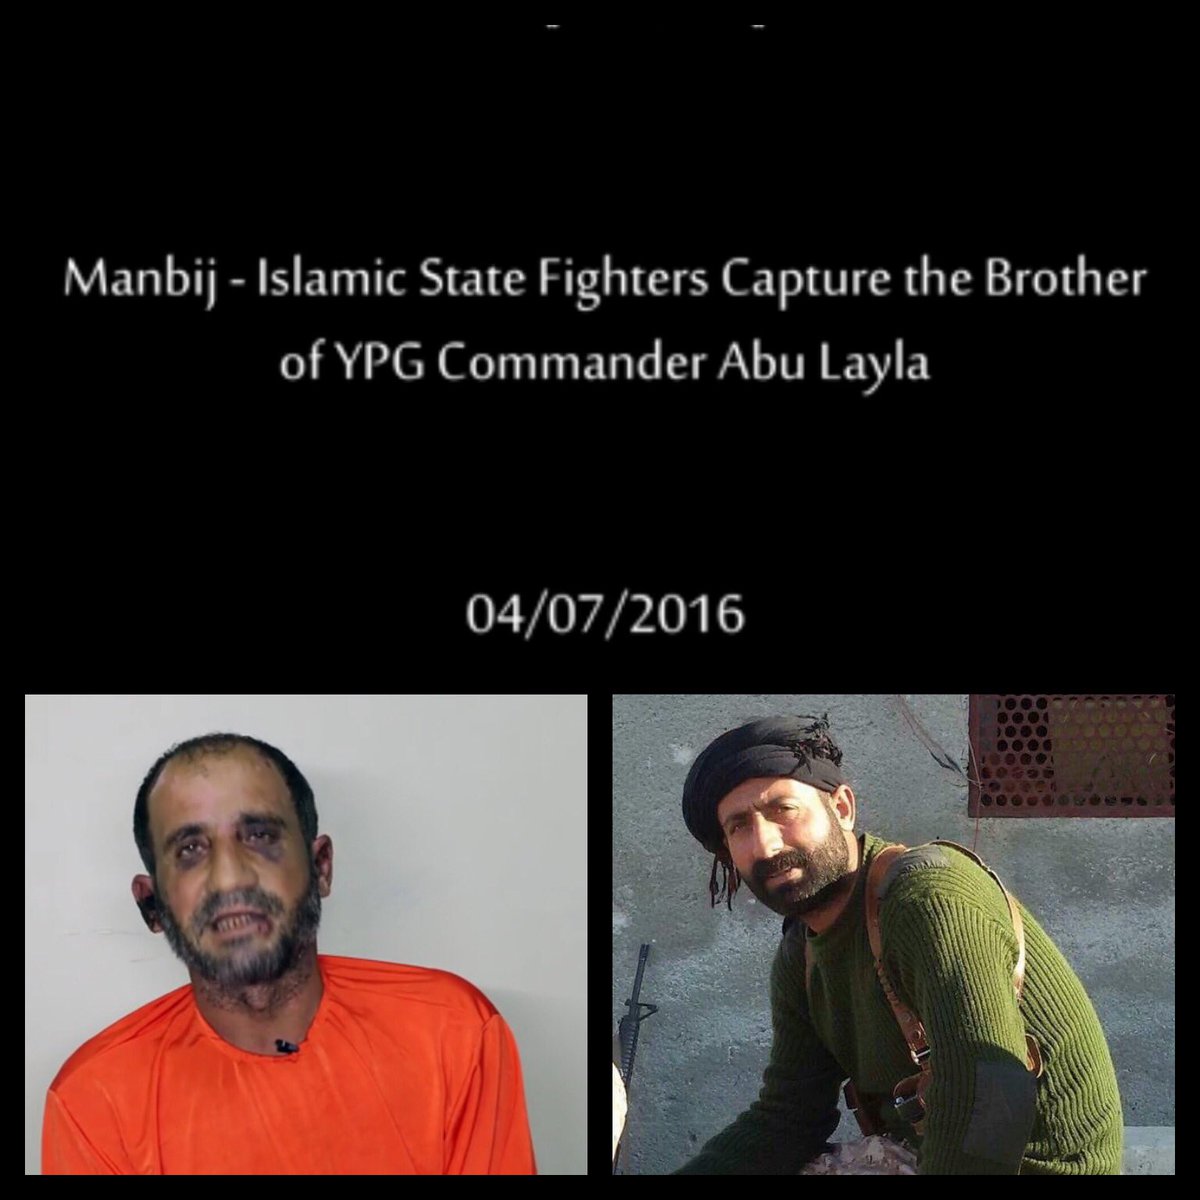 ISIS behauptet, dass sie den  Bruder eines berühmten YPG / SDF Kommandeur Abu Layla festgenommen haben, der am 5. Juni getötet wurde